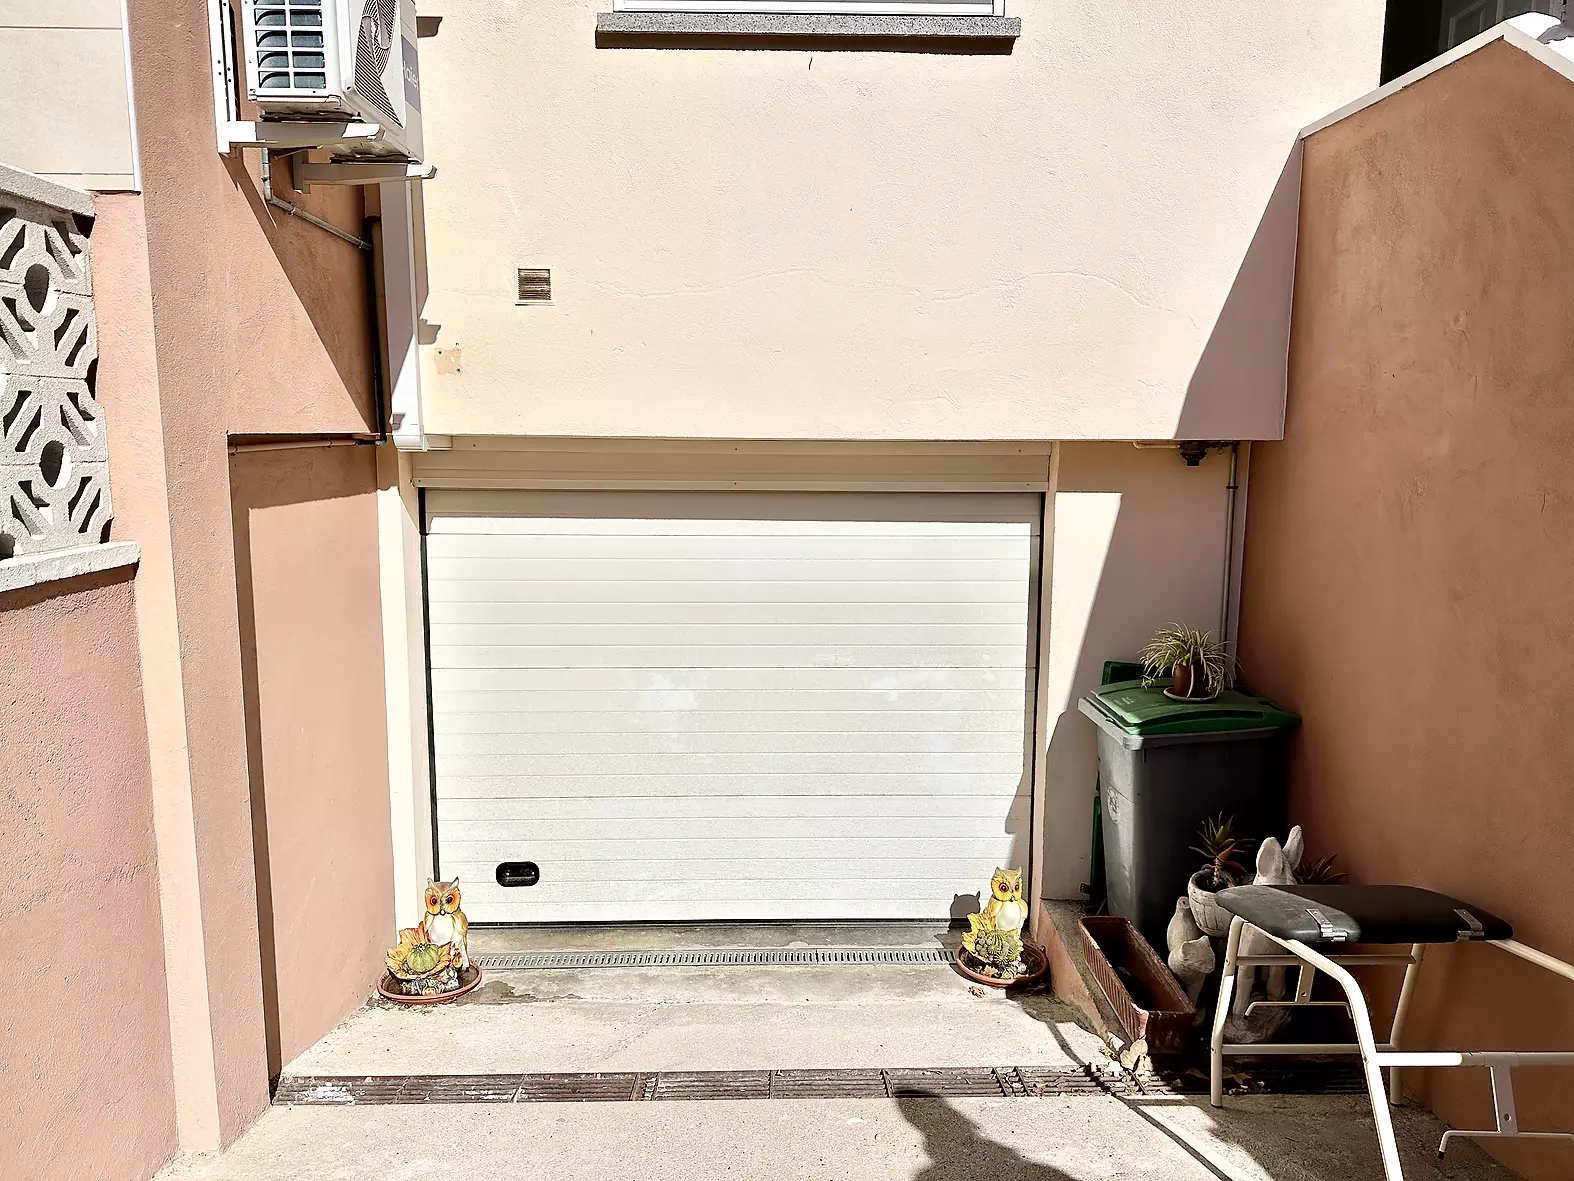 Maison jumelée confortable avec trois chambres et garage à Castelló Nou (Costa Brava)